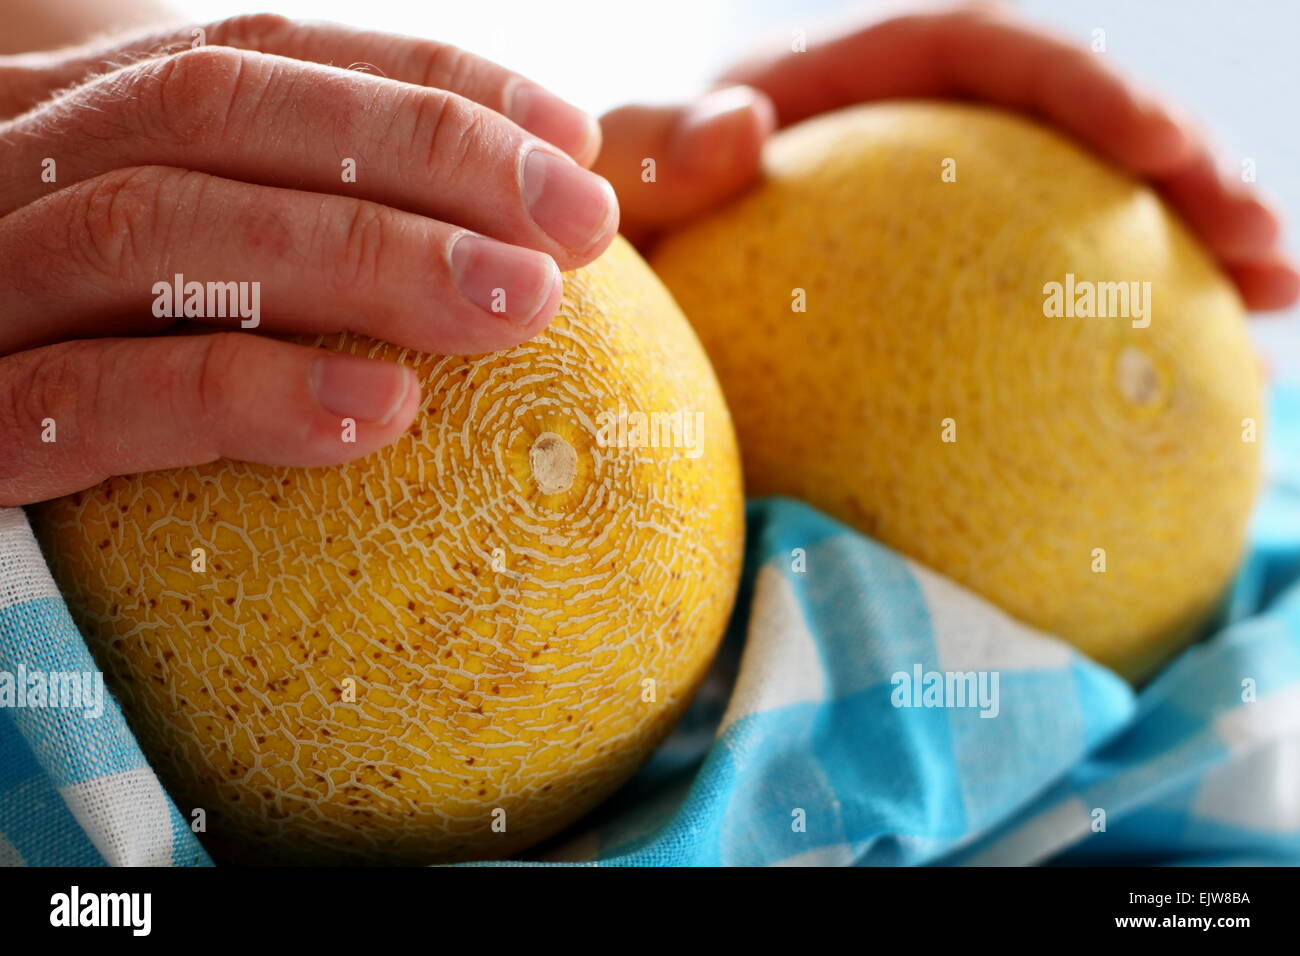 Men's hands holding deux melon Galia sur blanc-bleu serviette, soft focus Banque D'Images